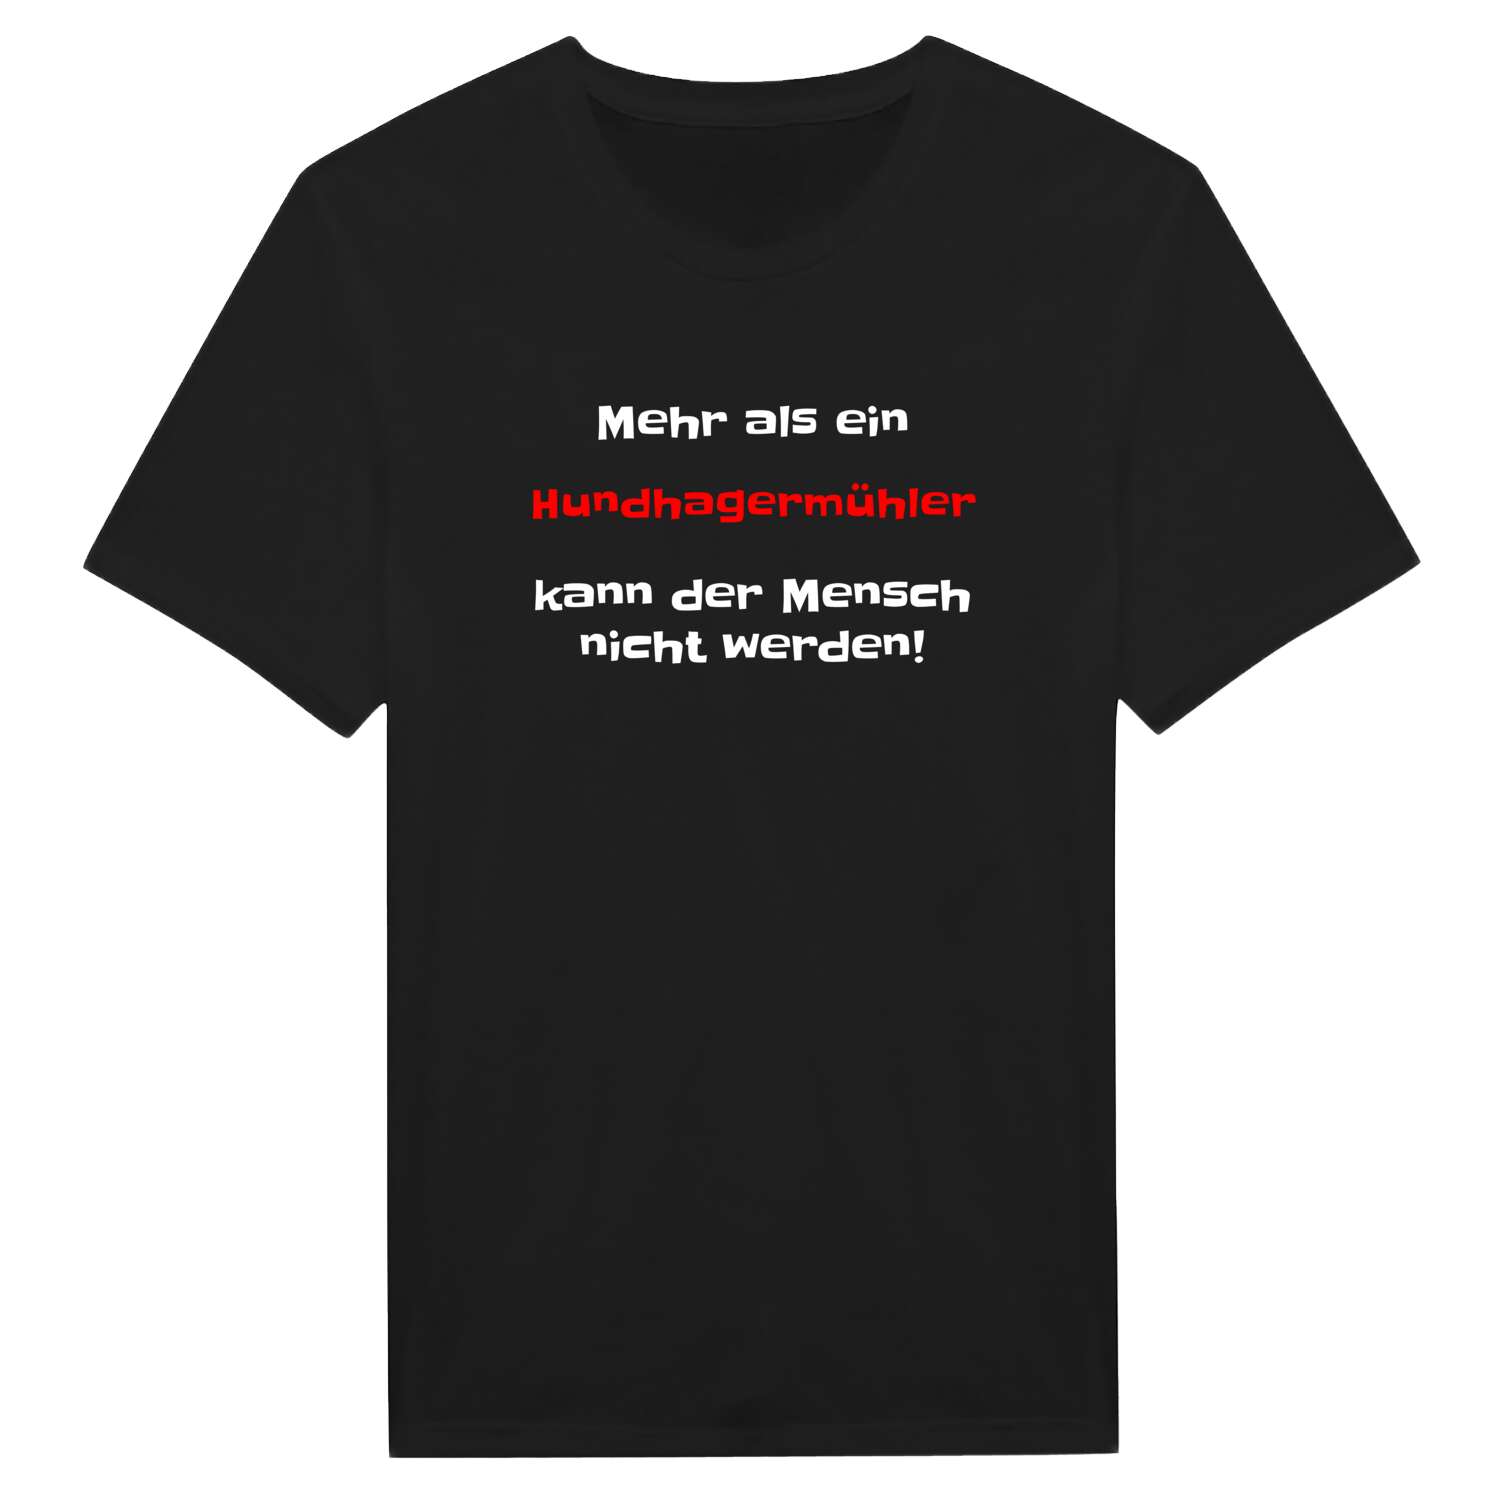 Hundhagermühl T-Shirt »Mehr als ein«